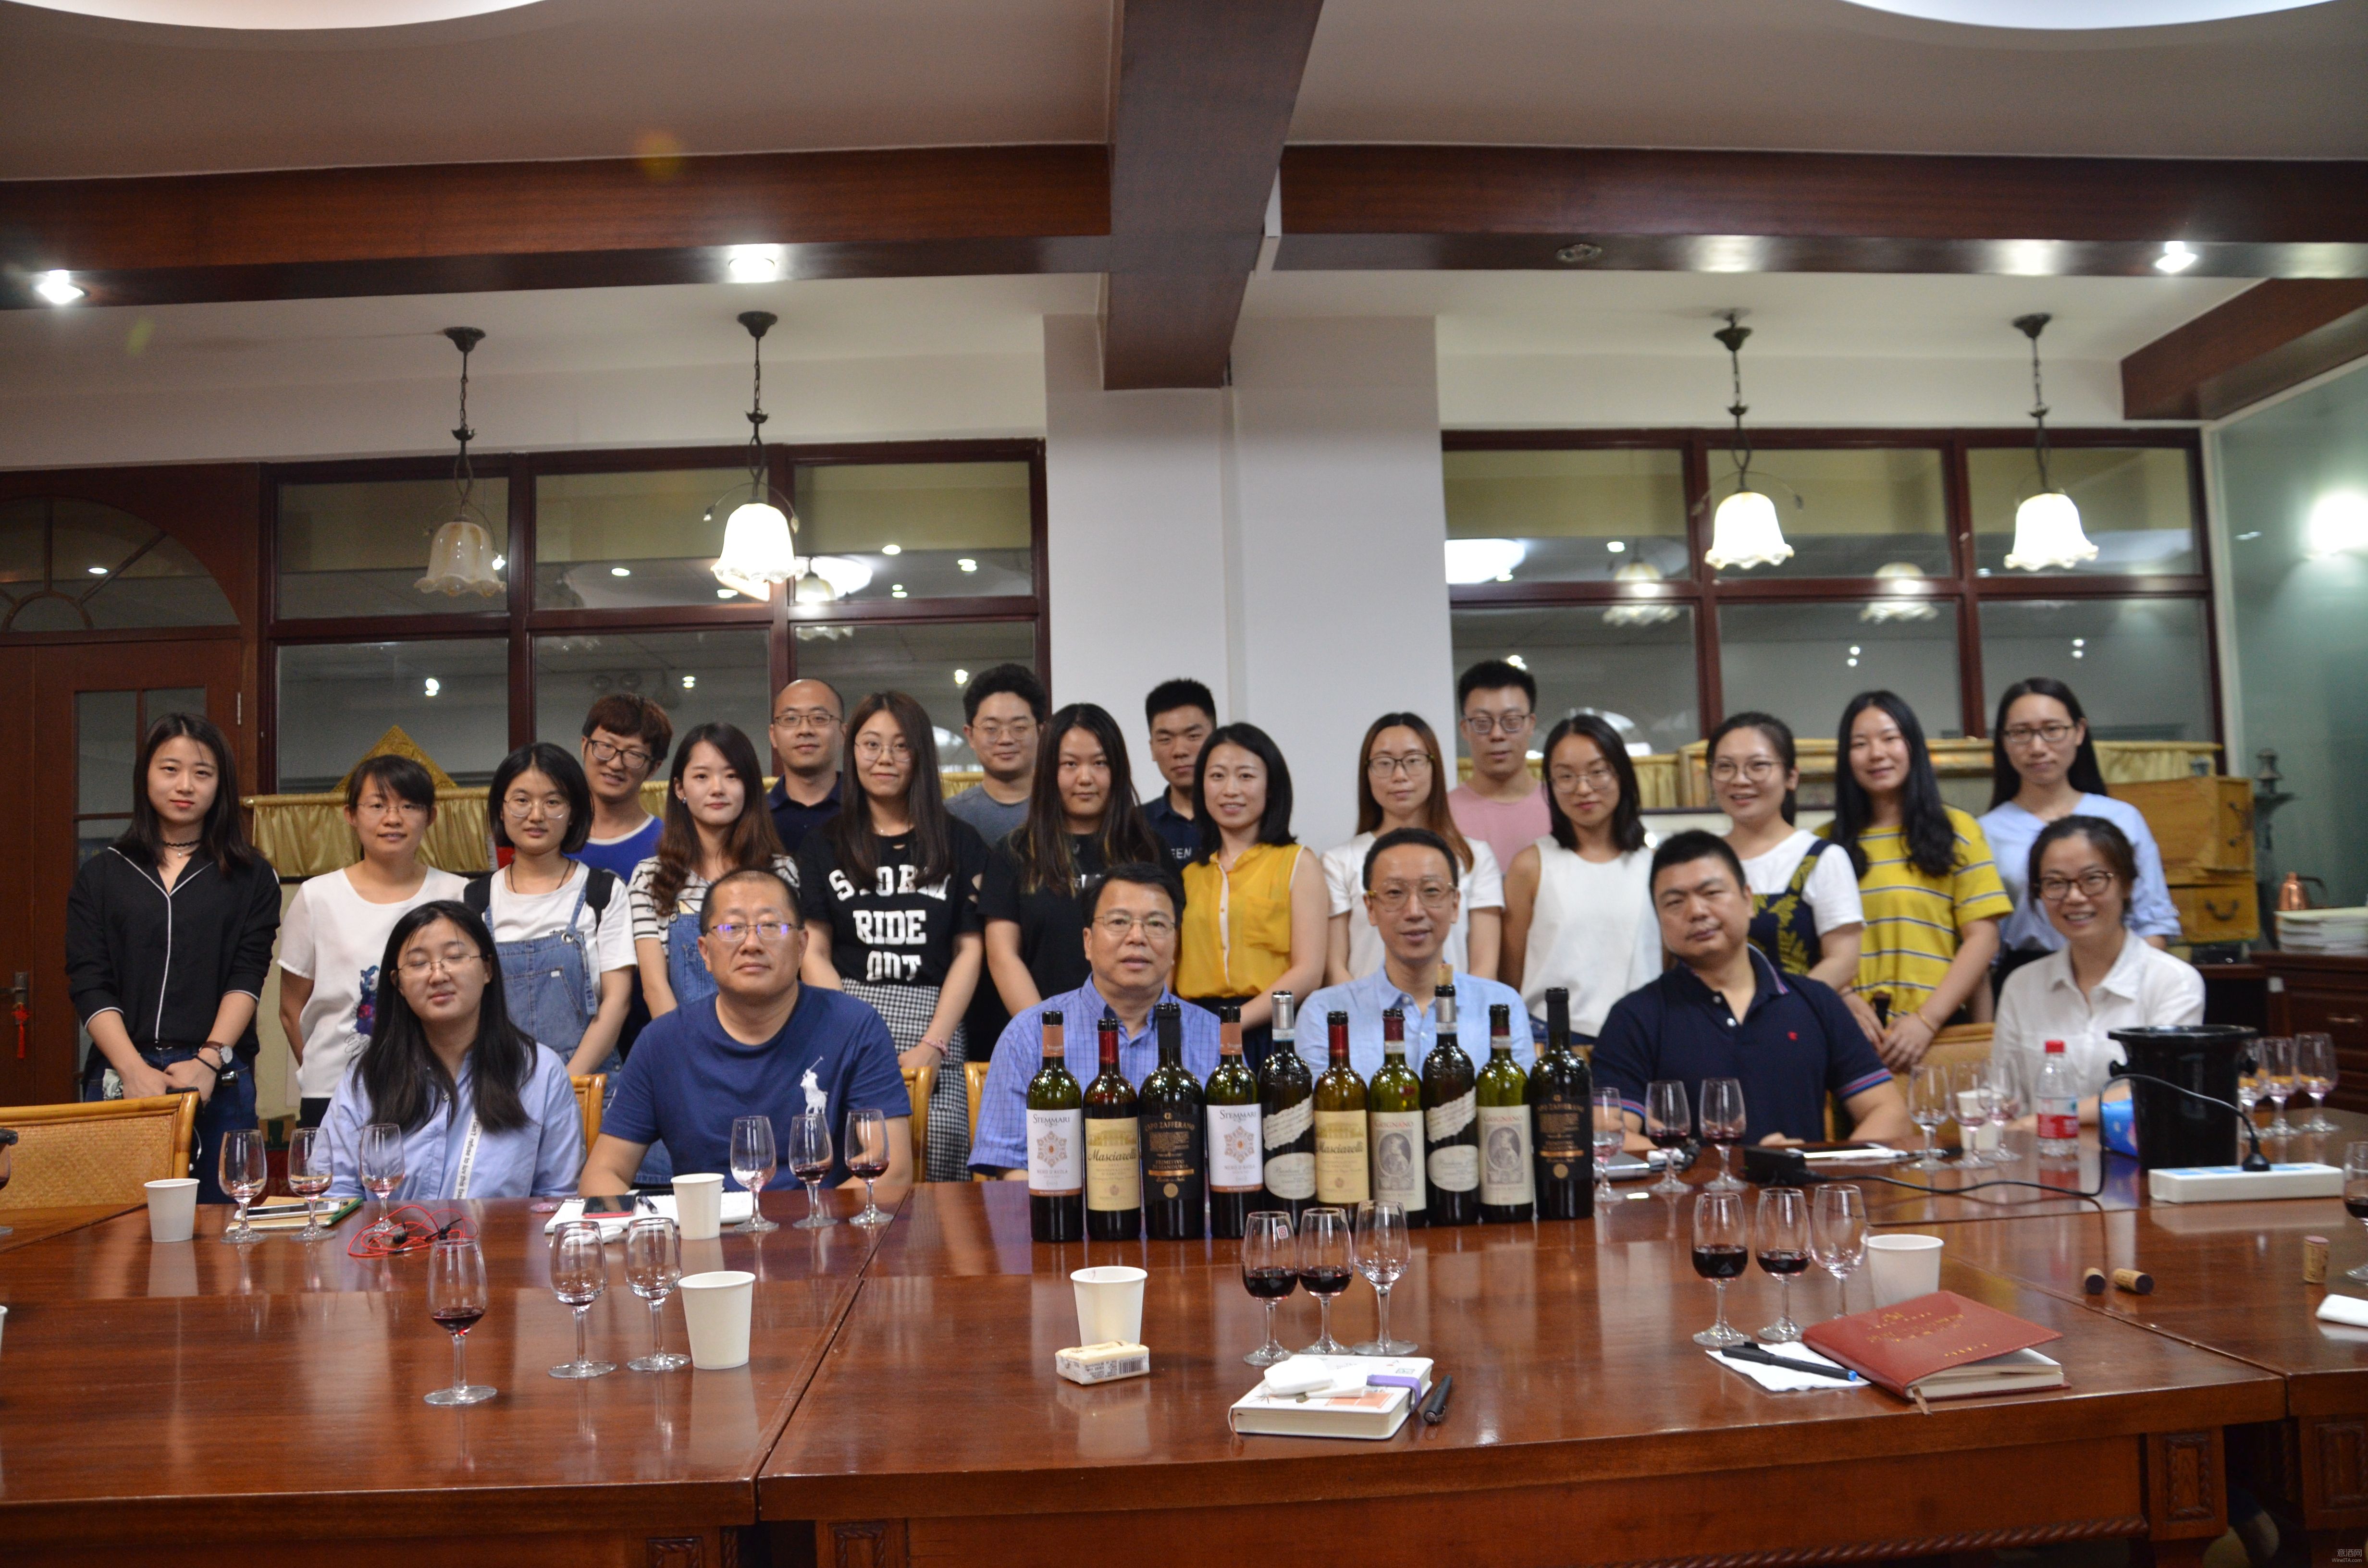 意酒文化促进会走进中国农业大学 在葡萄酒专业院校中去普及意大利葡萄酒知识